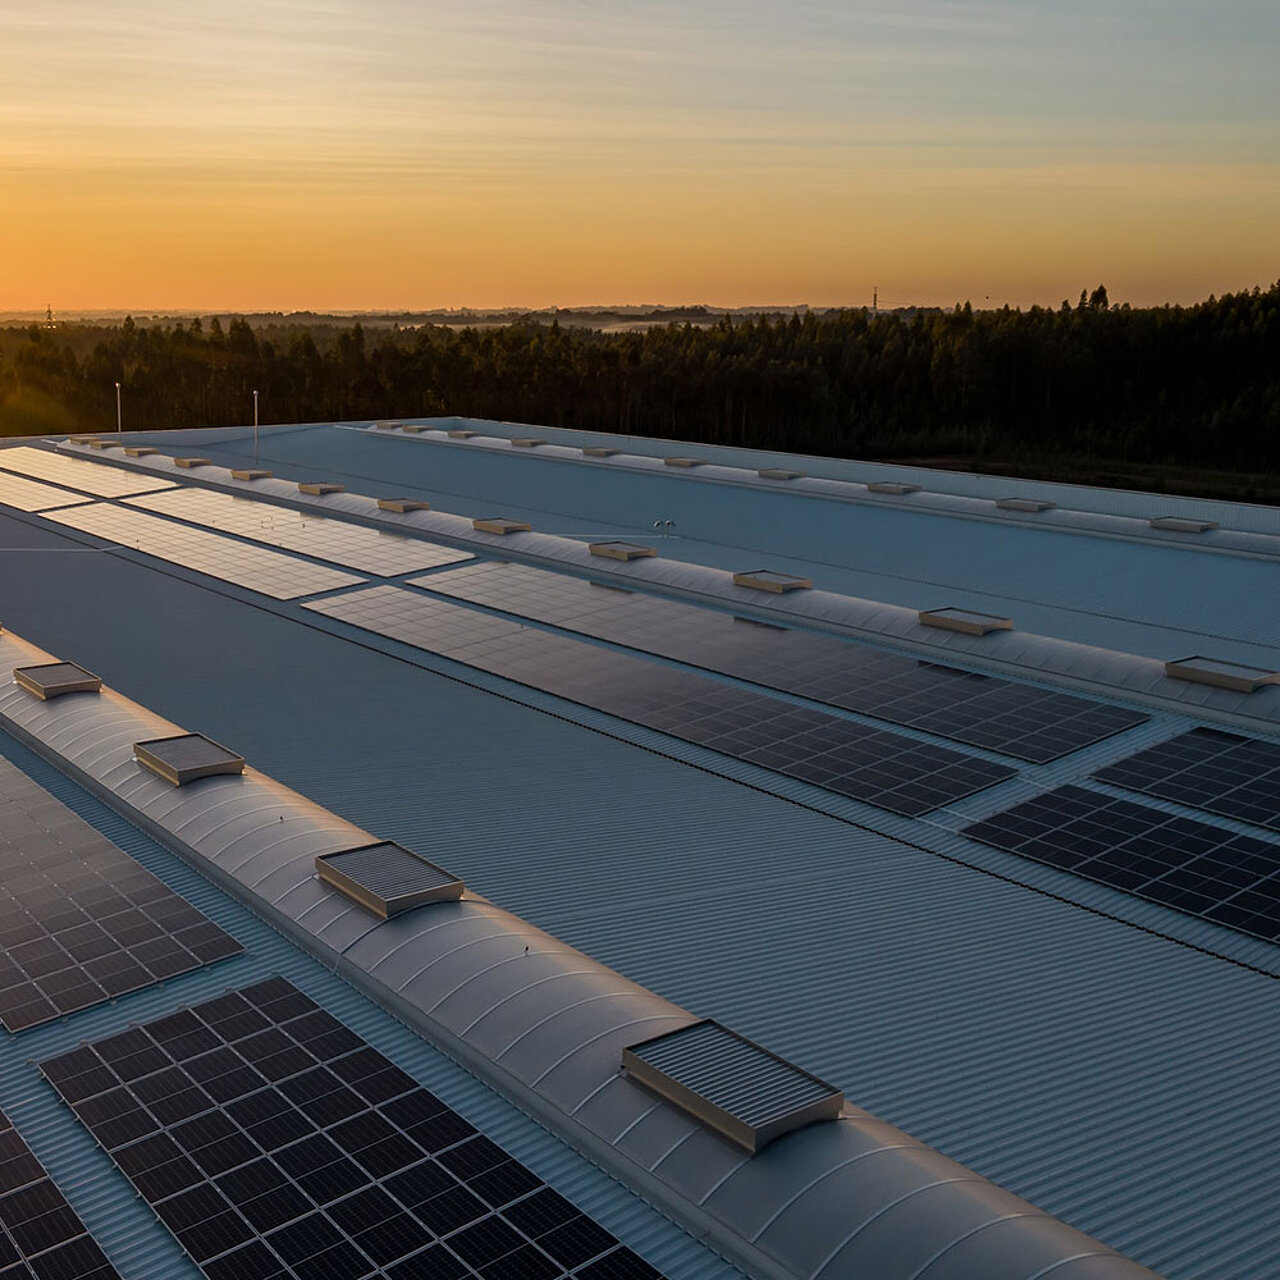 Dach einer Lagerhalle mit Solarpanelen für nachhaltigen Strom